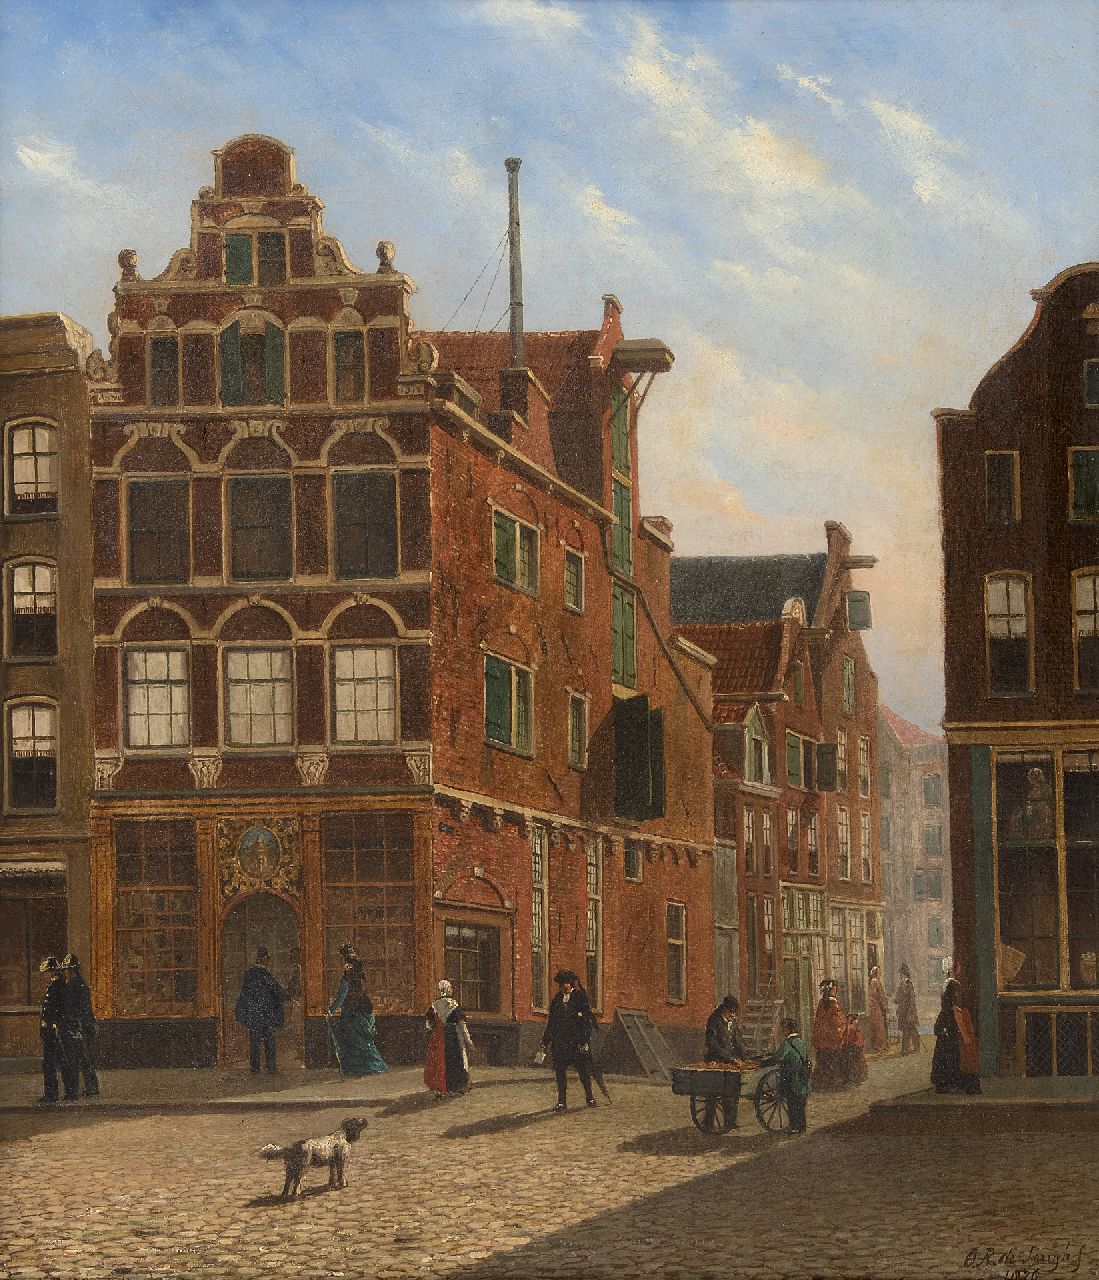 Oene Romkes de Jongh | Blick in eine niederländische Stadt, Öl auf Leinwand, 54,0 x 44,0 cm, Unterzeichnet u.r. und datiert 1876